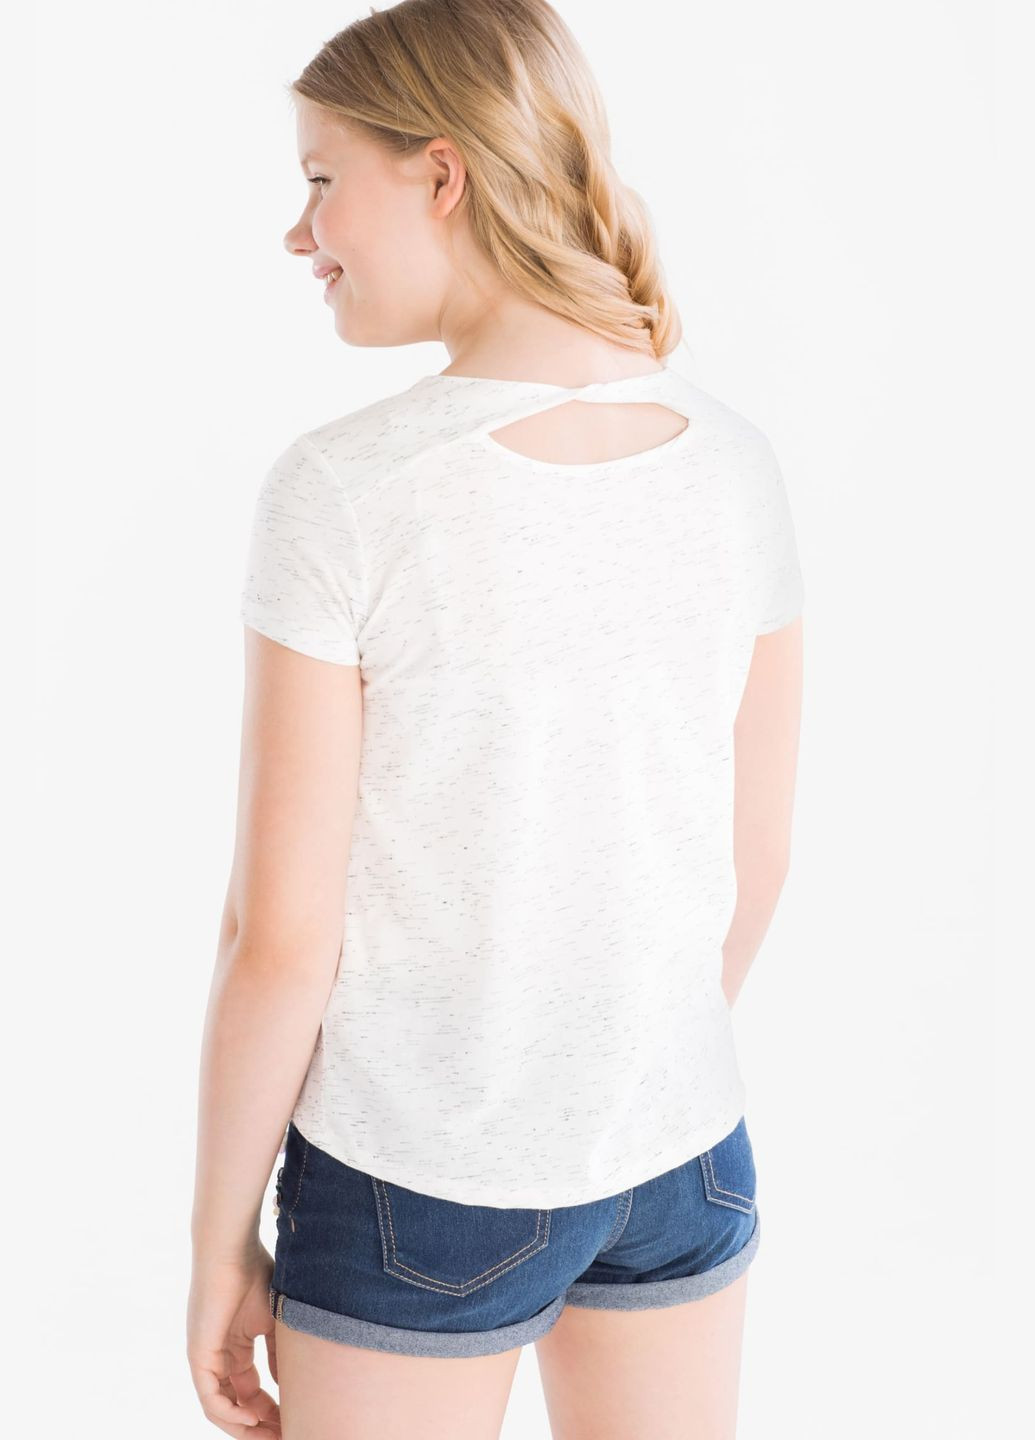 Белая летняя футболка на девочку с бабочками 158-164 размер 2015458 C&A